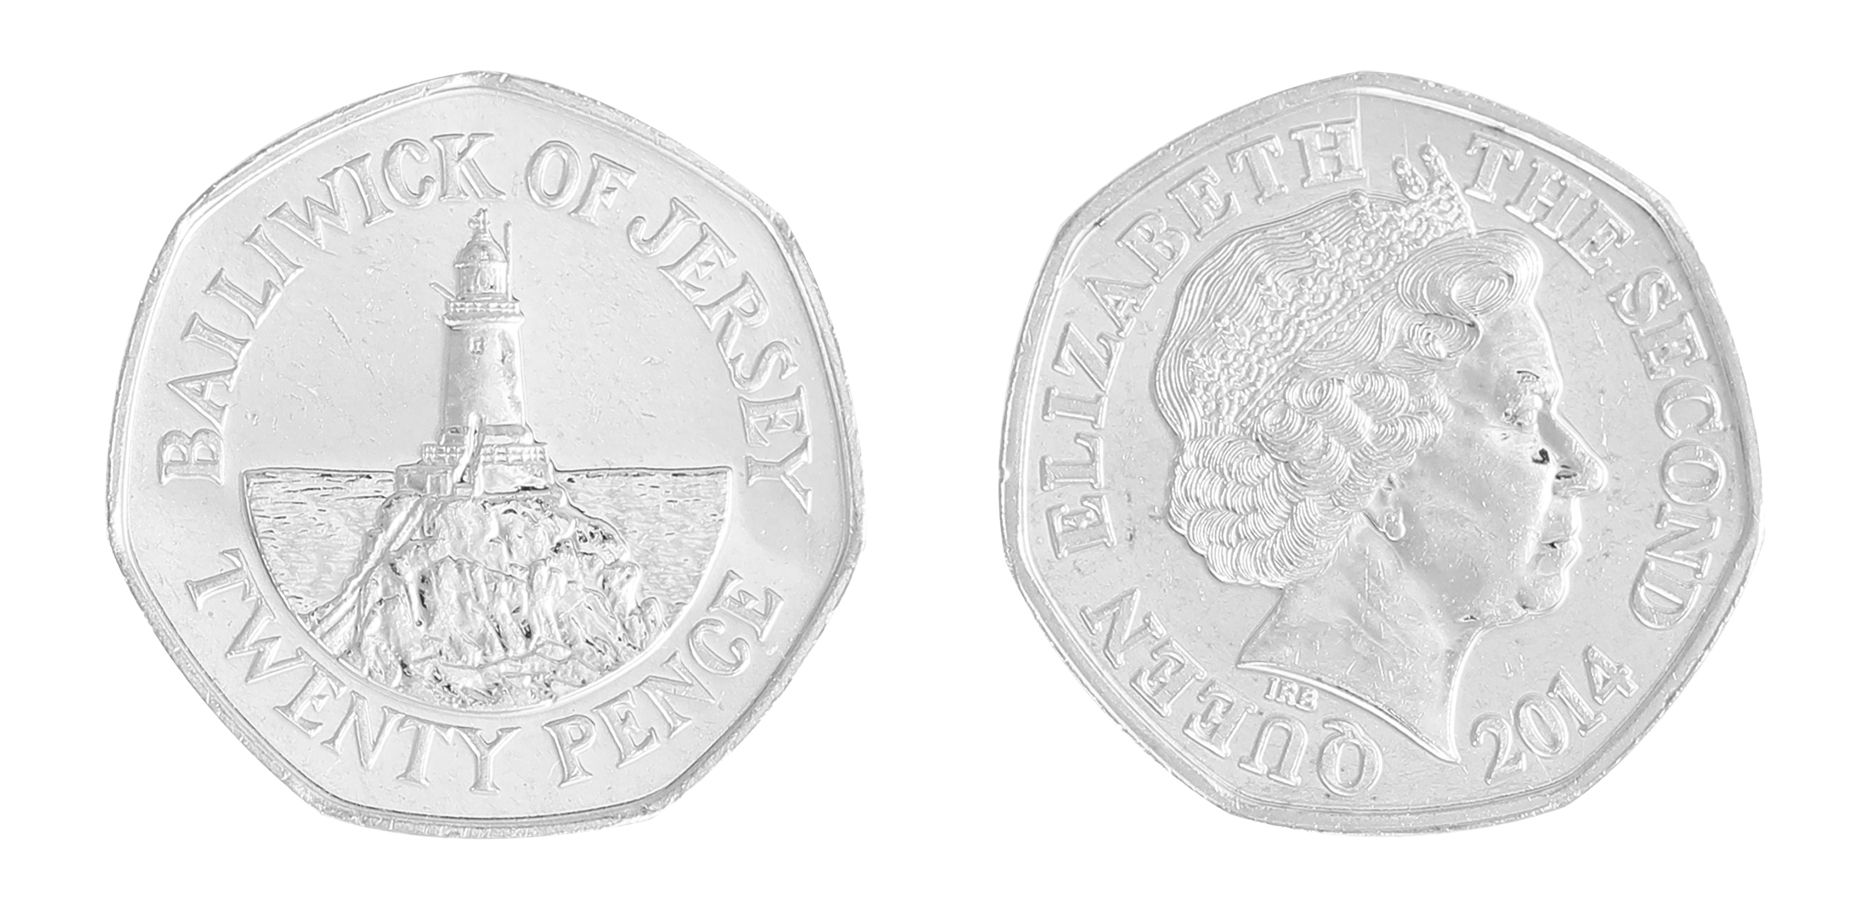 Jersey Set 8 Coins UNC 1 2 Pounds 1998-2009 1 2 5 10 20 50 Pence 